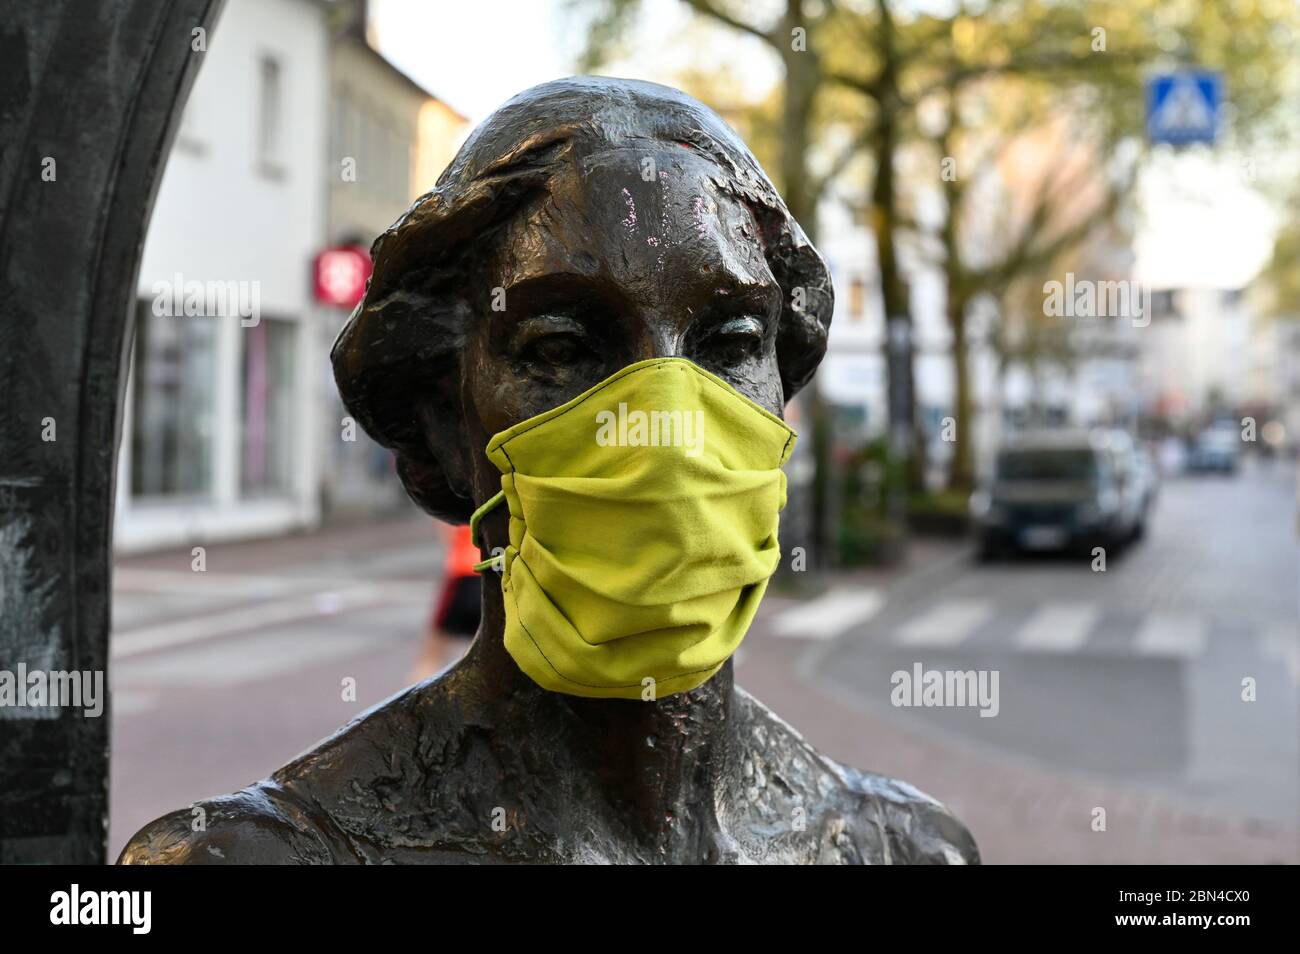 GERMANIA, Amburgo, Ottensen, Corona Virus, COVID-19 , Ottenser Torbogen, scultura di due donne dell'artista Doris Waschk-Balz , qualcuno ha messo una maschera protettiva per proteggerle da Covid-19 Foto Stock